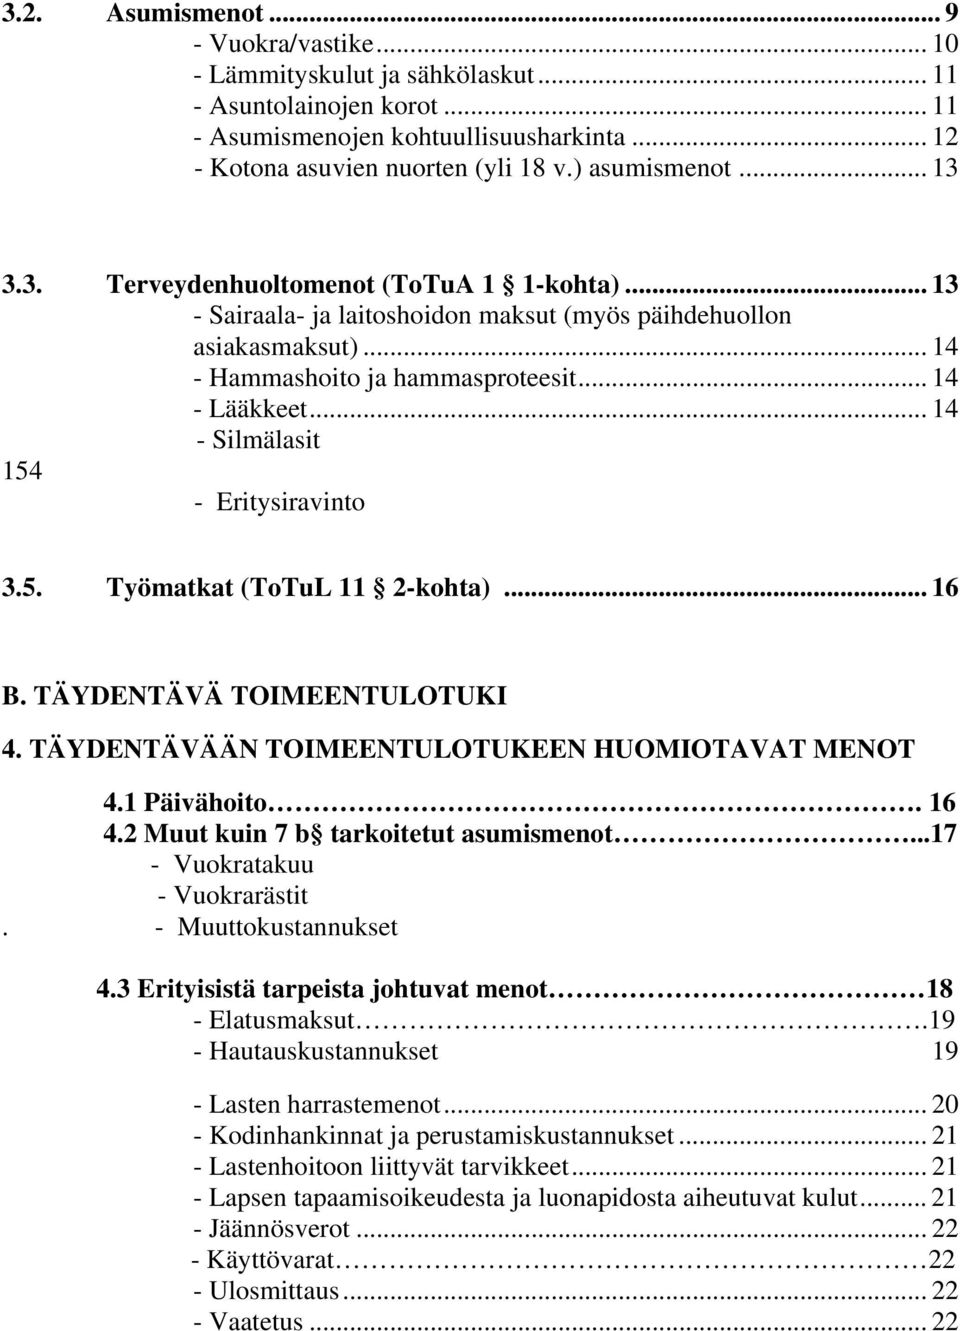 .. 14 - Silmälasit 154 - Eritysiravinto 3.5. Työmatkat (ToTuL 11 2-kohta)... 16 B. TÄYDENTÄVÄ TOIMEENTULOTUKI 4. TÄYDENTÄVÄÄN TOIMEENTULOTUKEEN HUOMIOTAVAT MENOT 4.1 Päivähoito. 16 4.